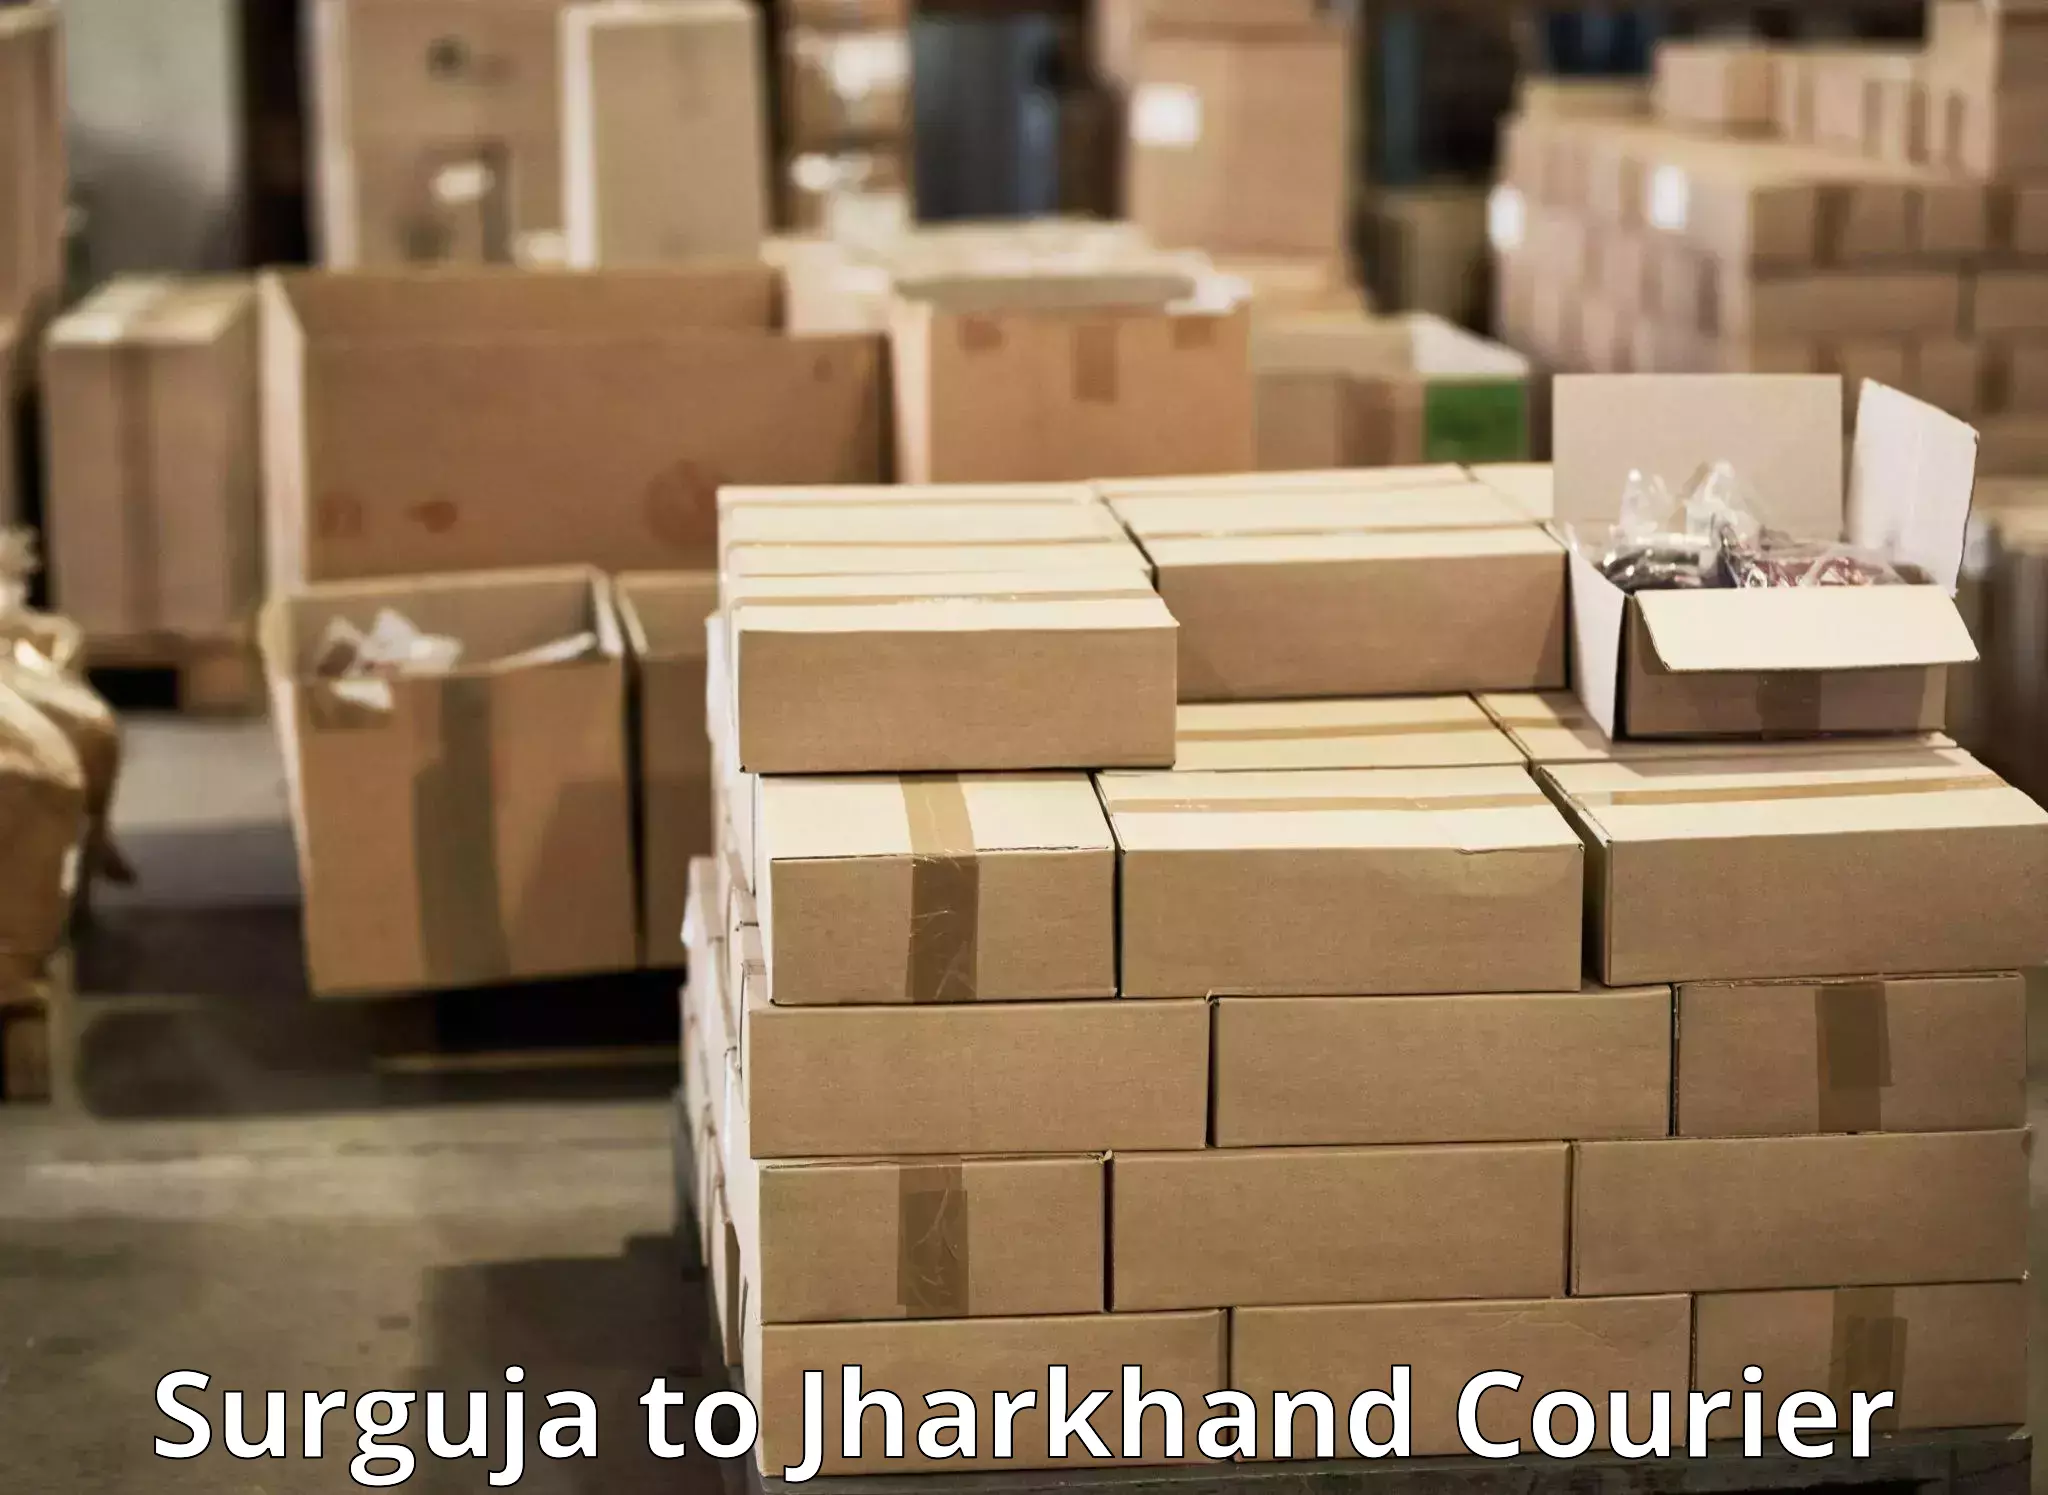 Express logistics service Surguja to Jharkhand